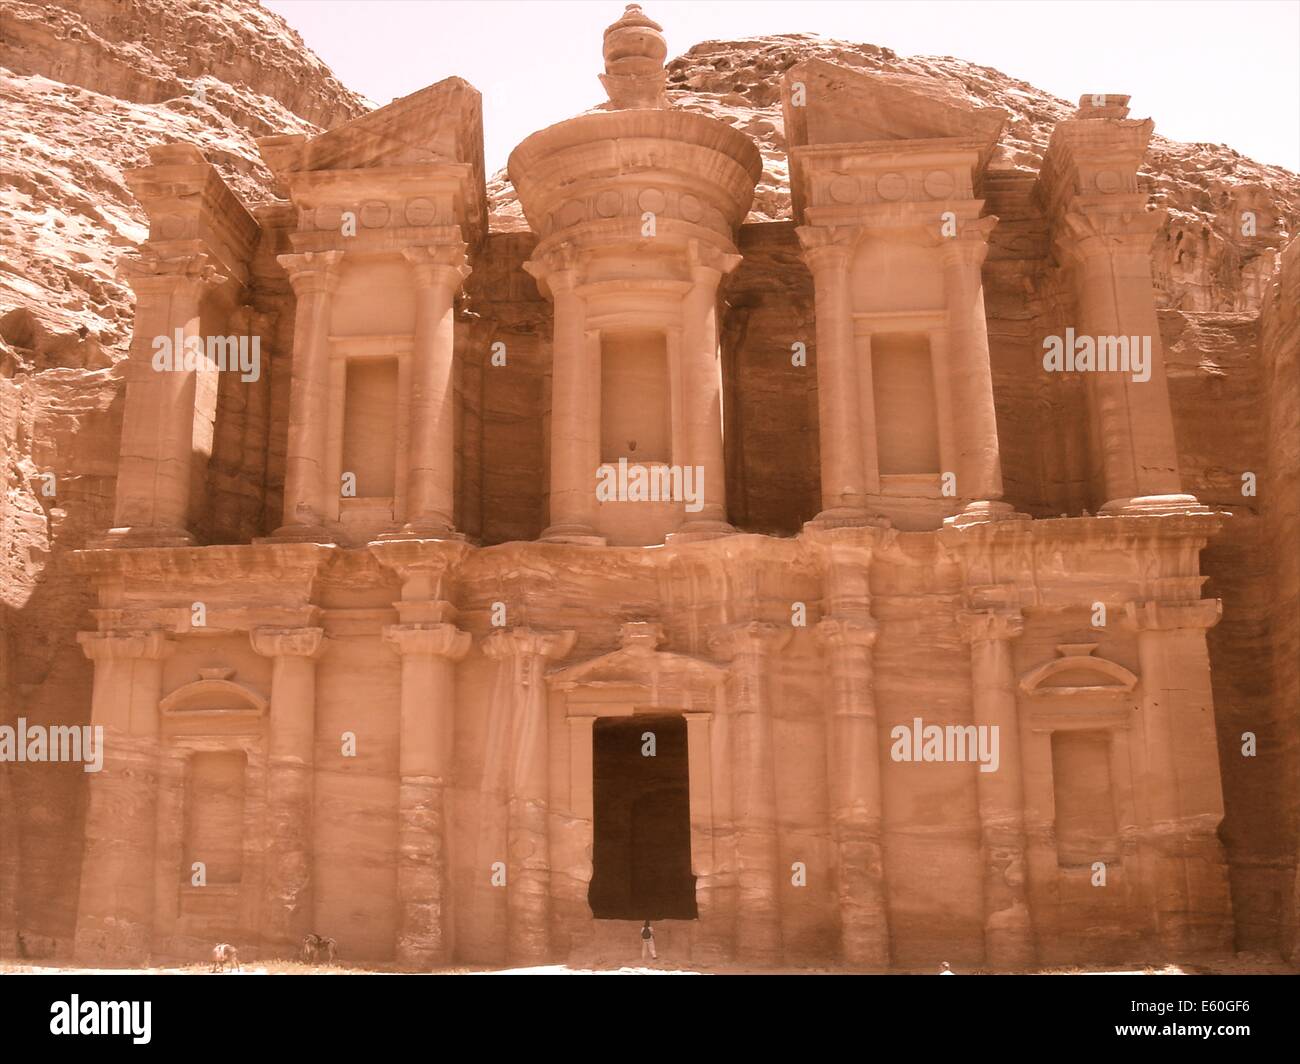 El Deir, il monastero di Petra, una delle sette meraviglie del mondo, nei deserti di Giordania Foto Stock